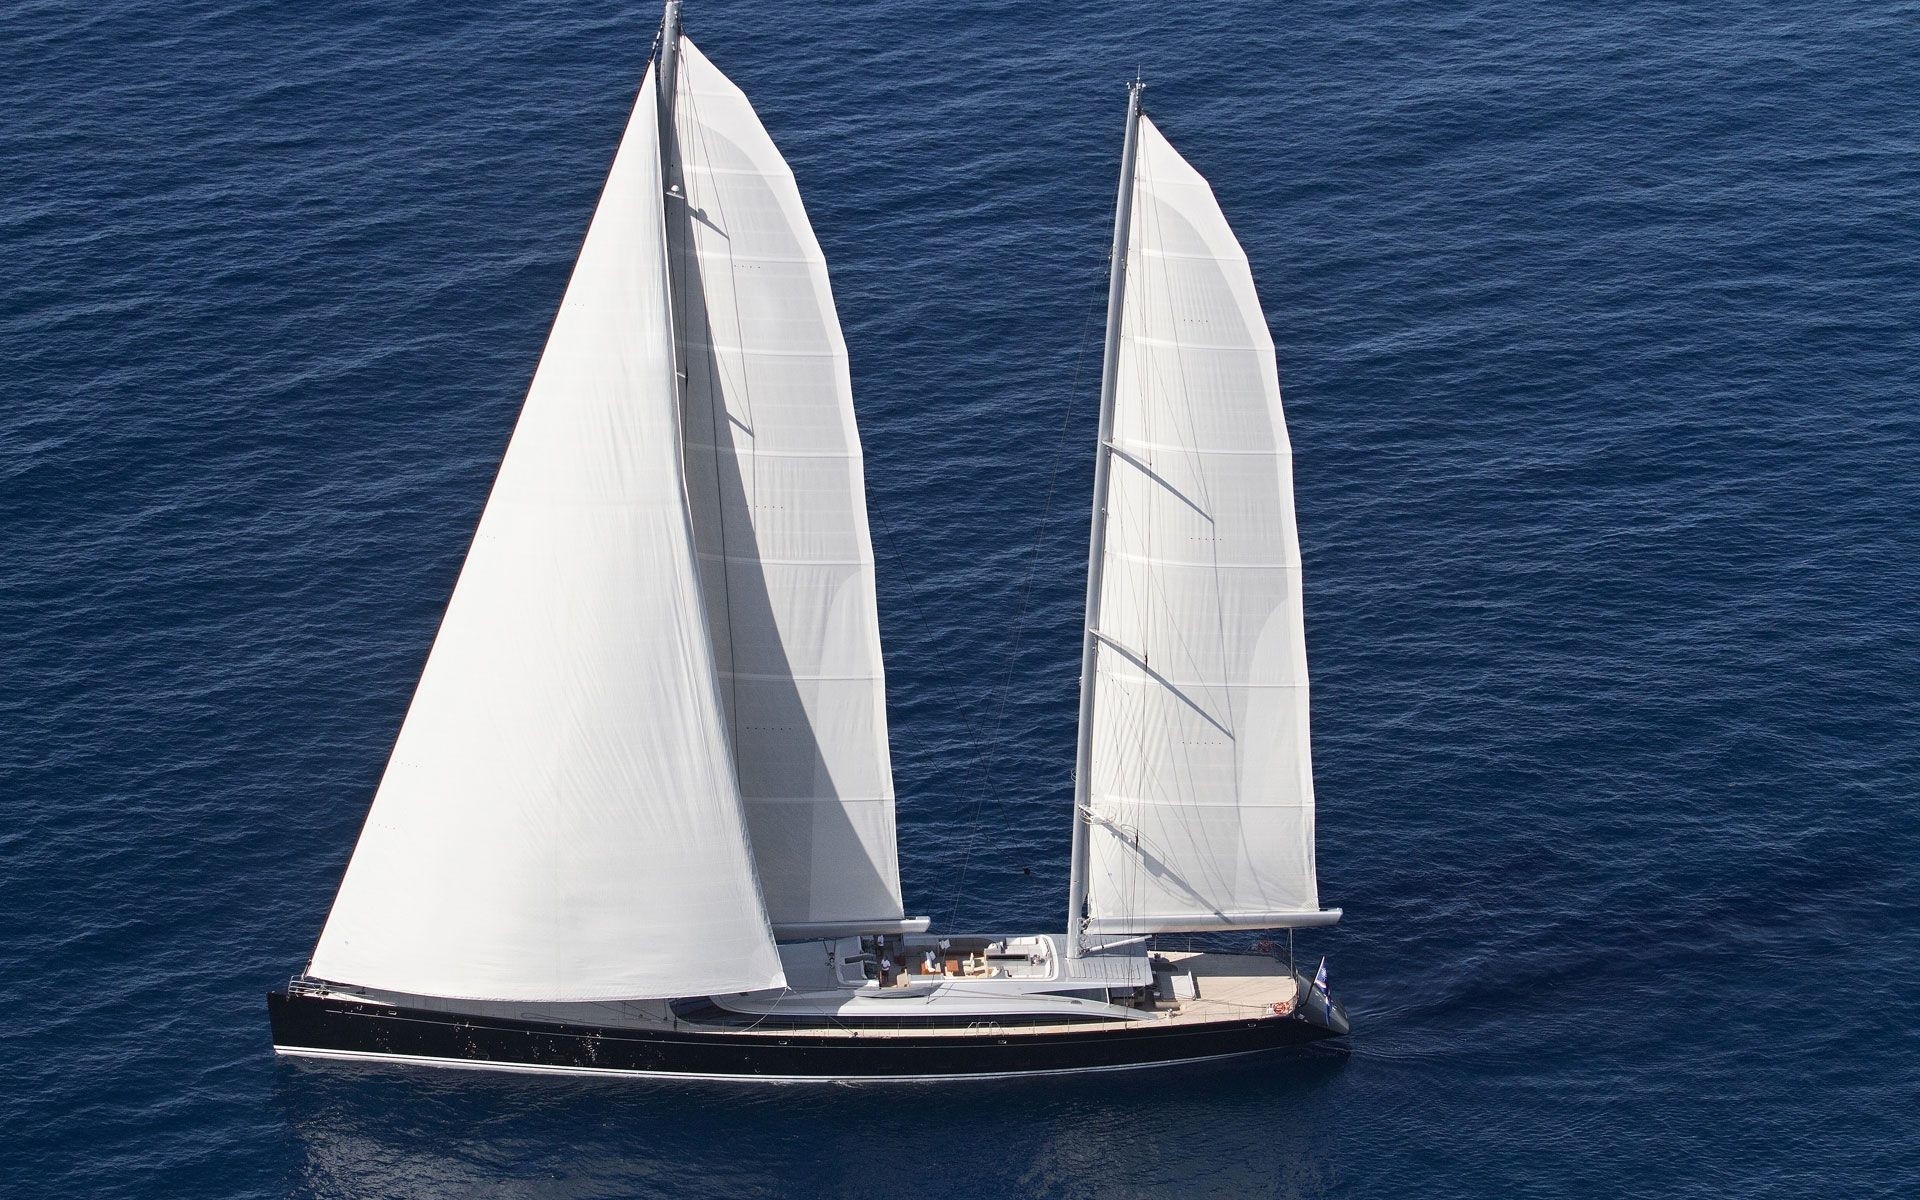 sailing yacht vertigo who owns